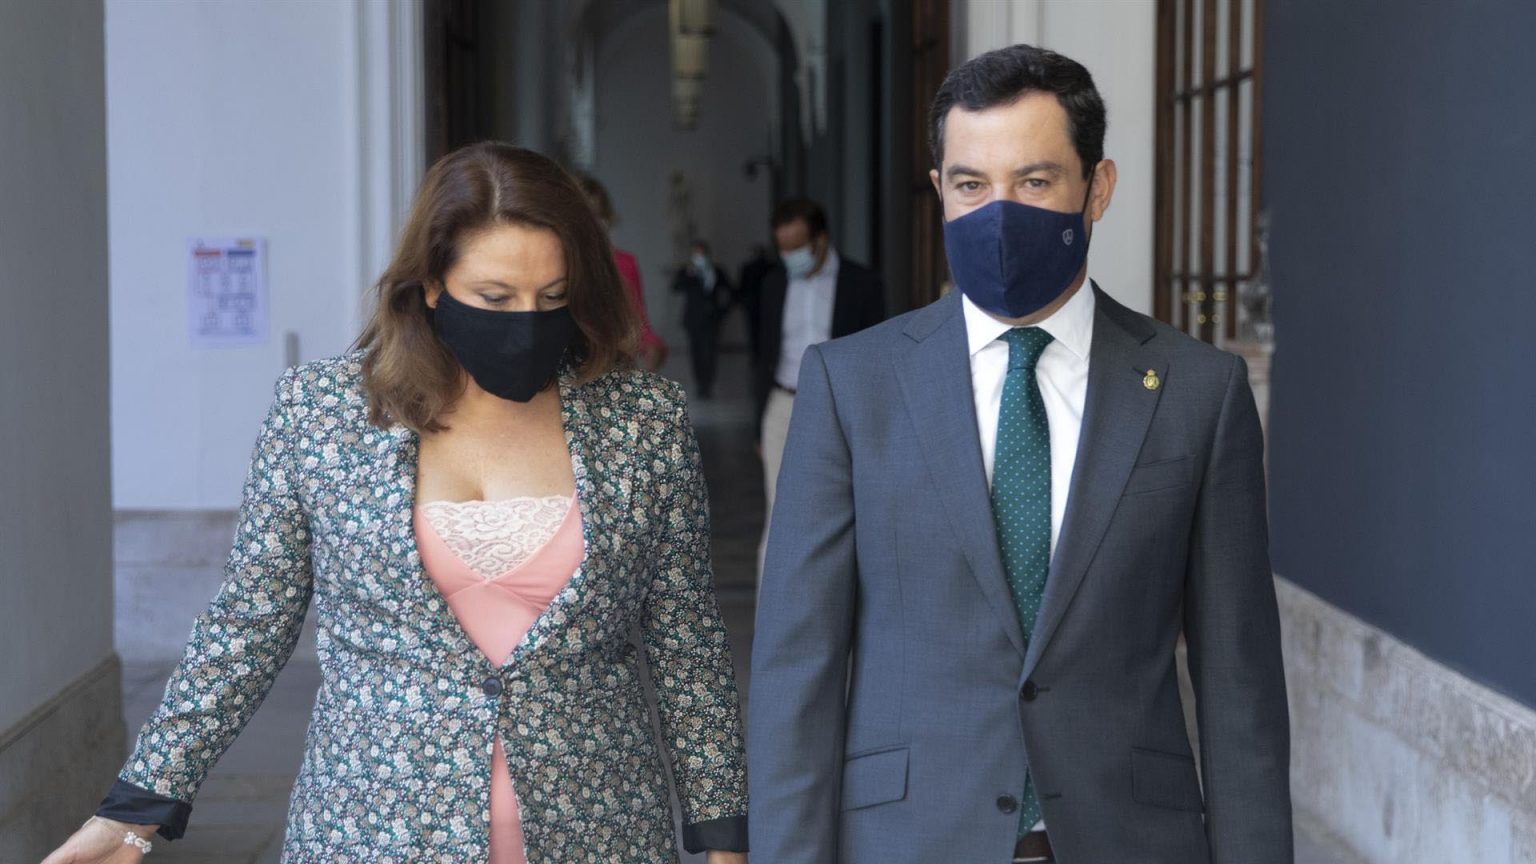 El PSOE andaluz pide explicaciones a Moreno tras la imputación de Carmen Crespo en un caso de corrupción